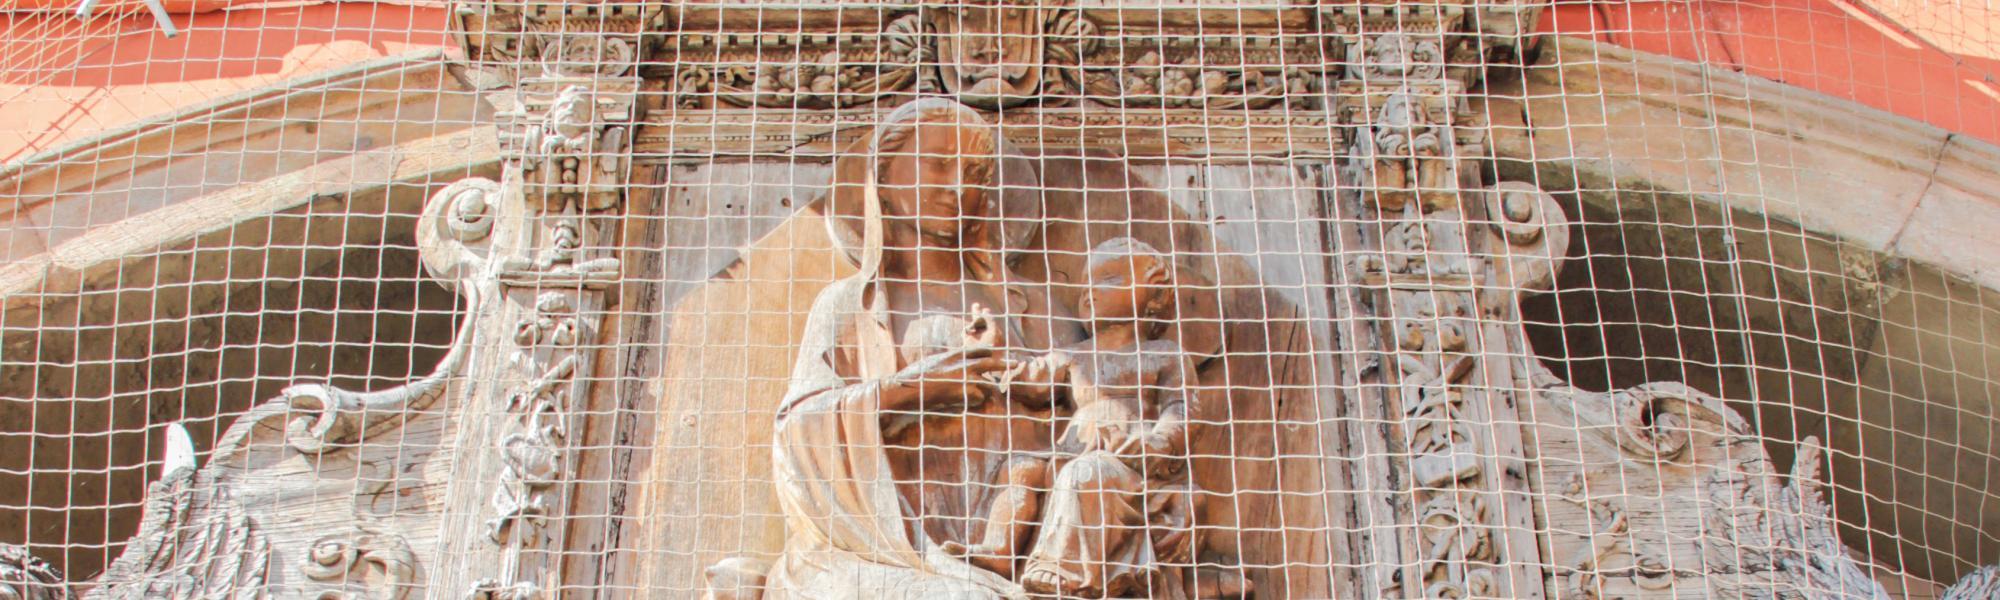 Tabernacolo ligneo, Madonna dei Vetturini (C. Bettini, Comune di Pisa)